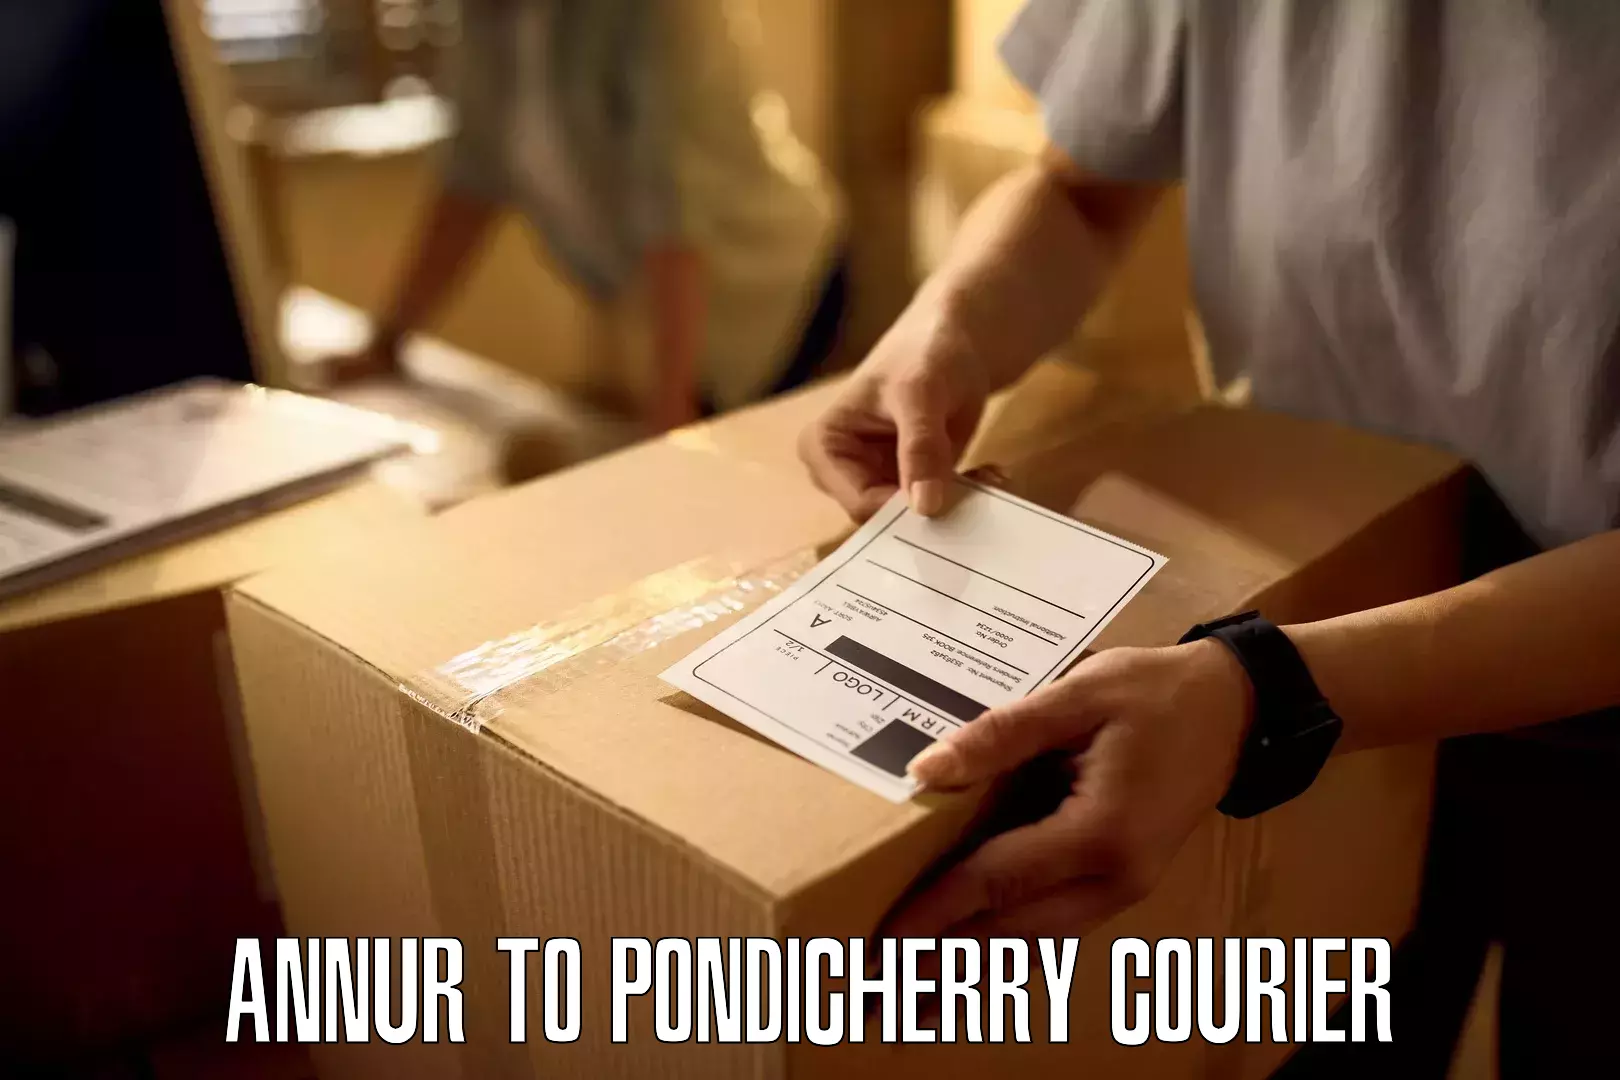 24/7 courier service Annur to NIT Puducherry